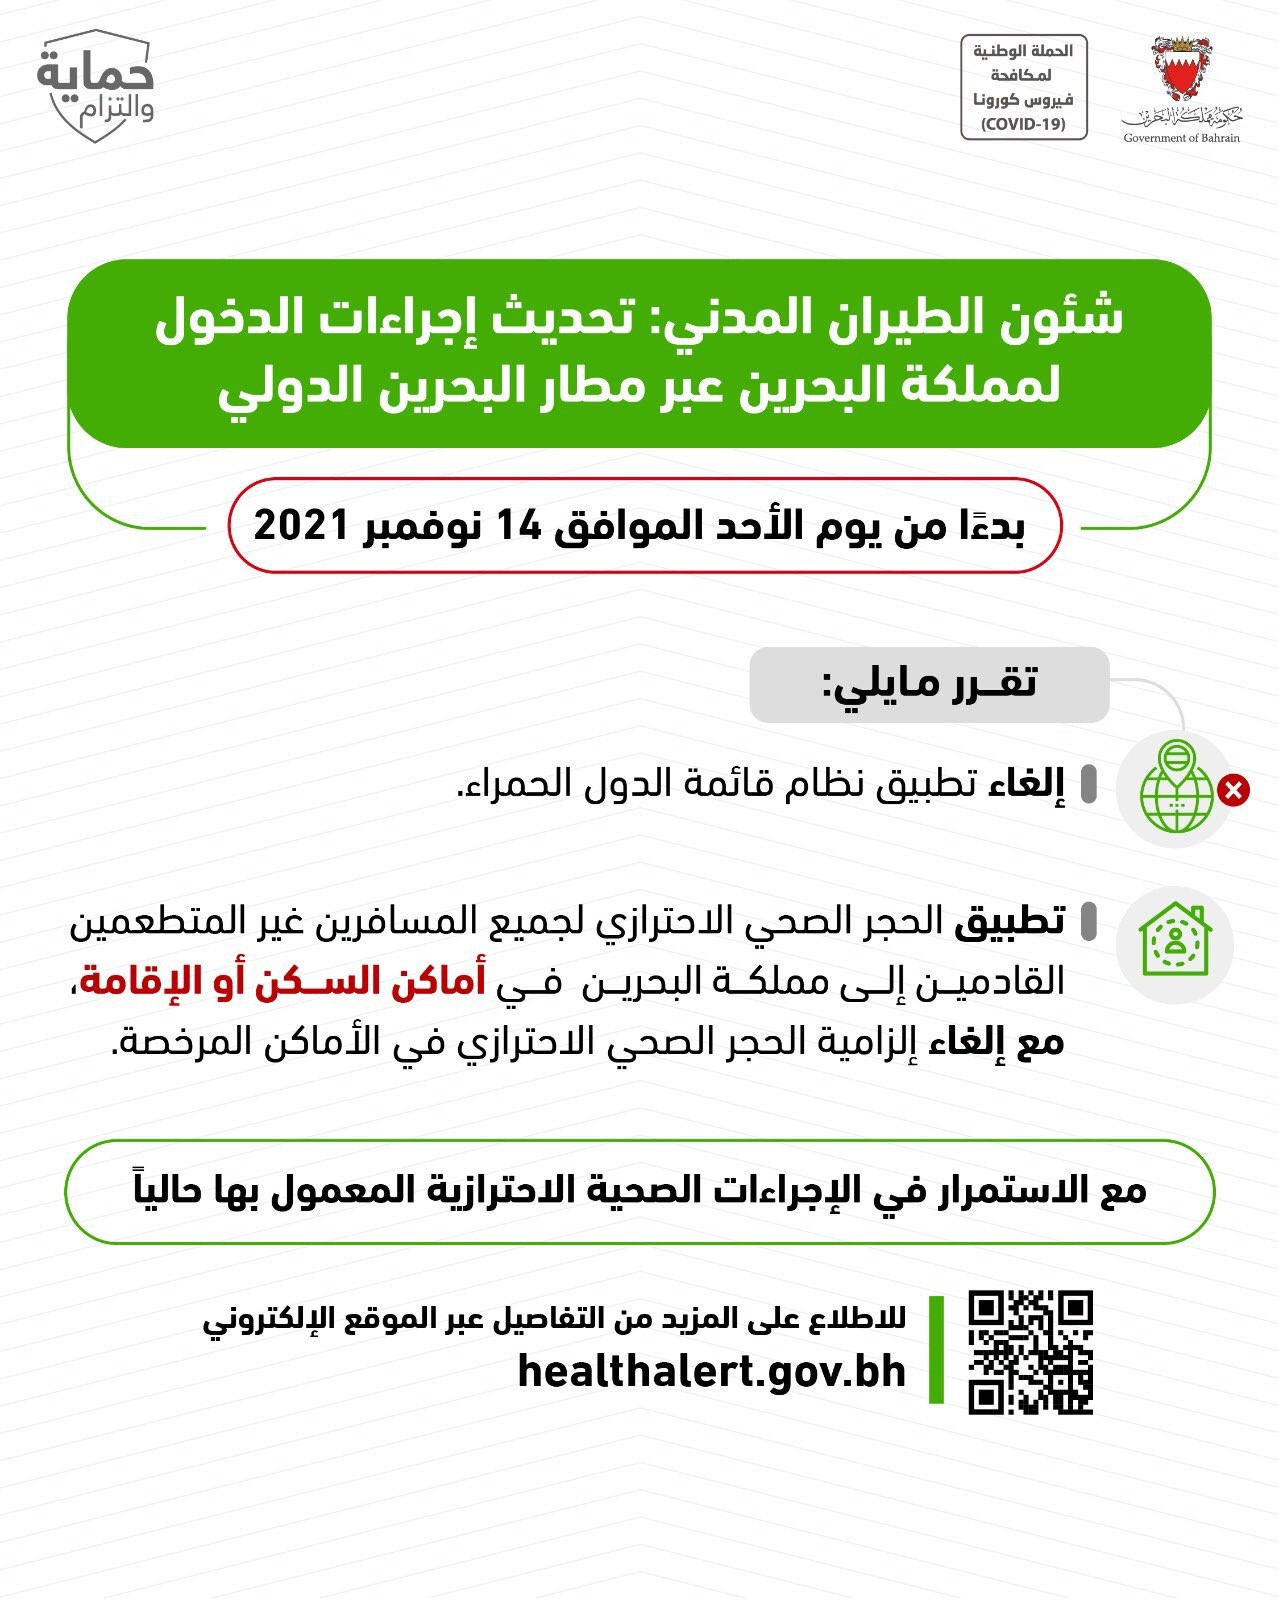 منشور الطيران المدني البحريني/ تويتر وزارة الصحة البحرينية